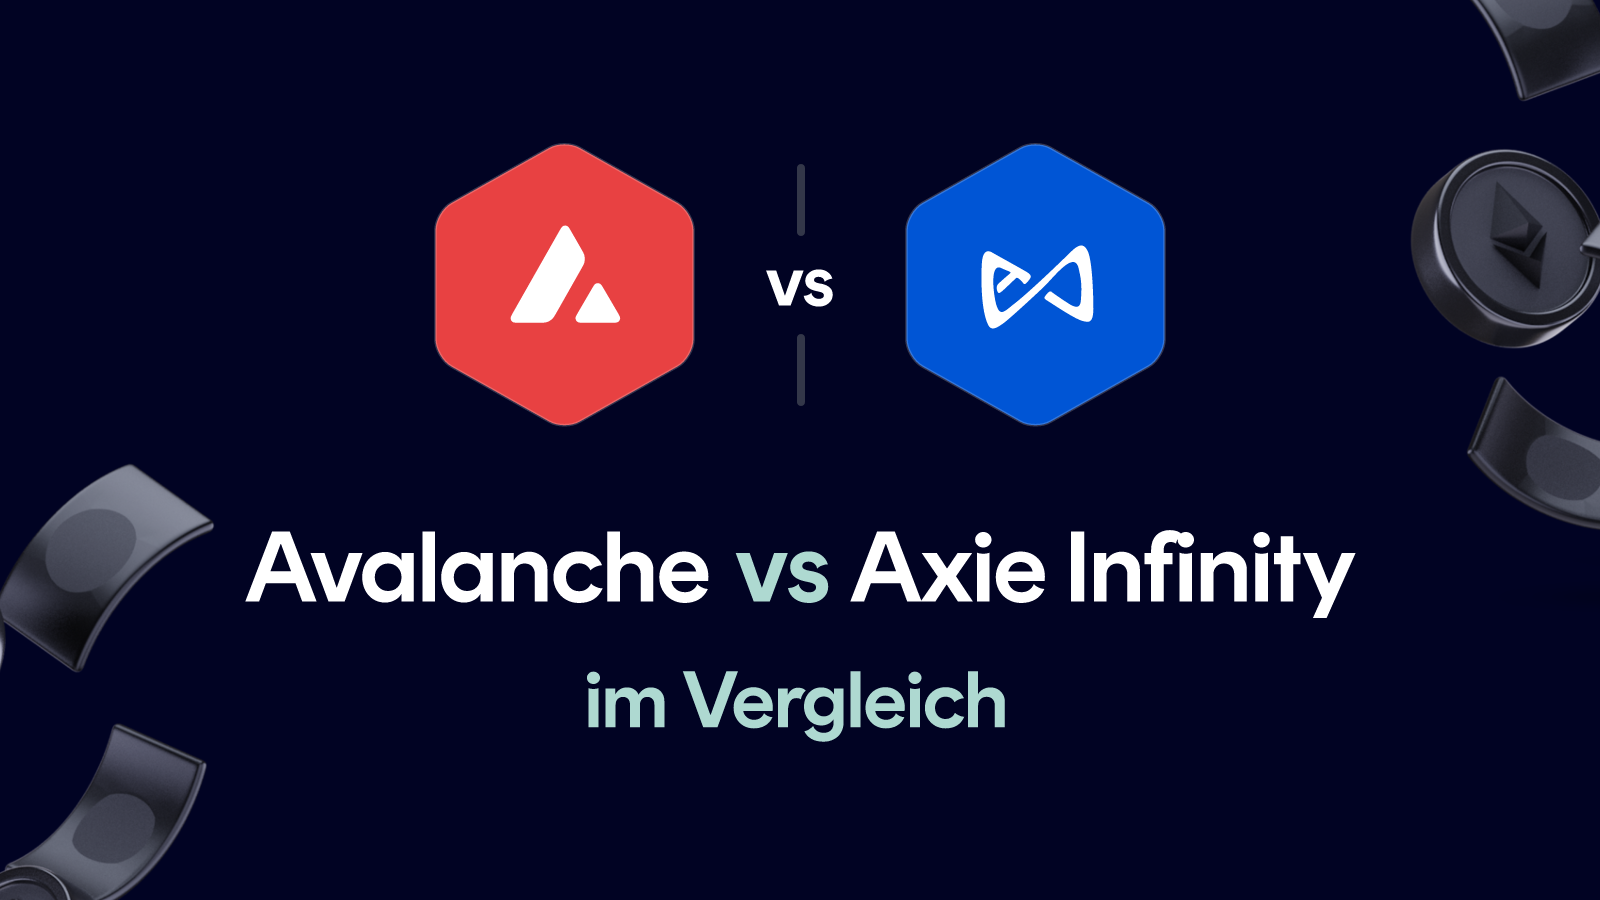 Avalanche vs Axie Infinity